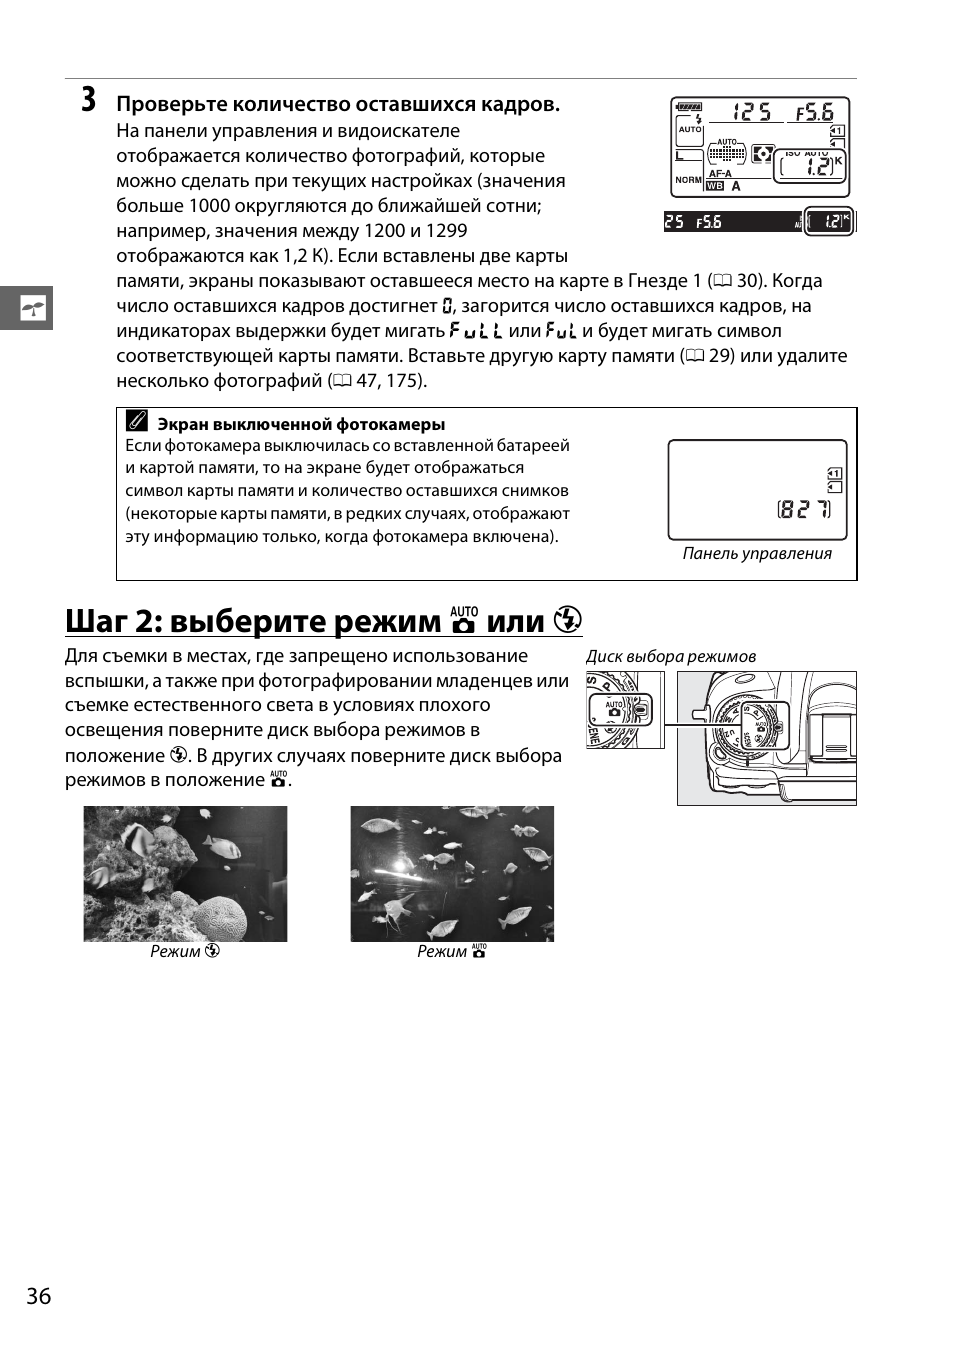 Шаг 2: выберите режим i или j | Инструкция по эксплуатации Nikon D7000 | Страница 56 / 348